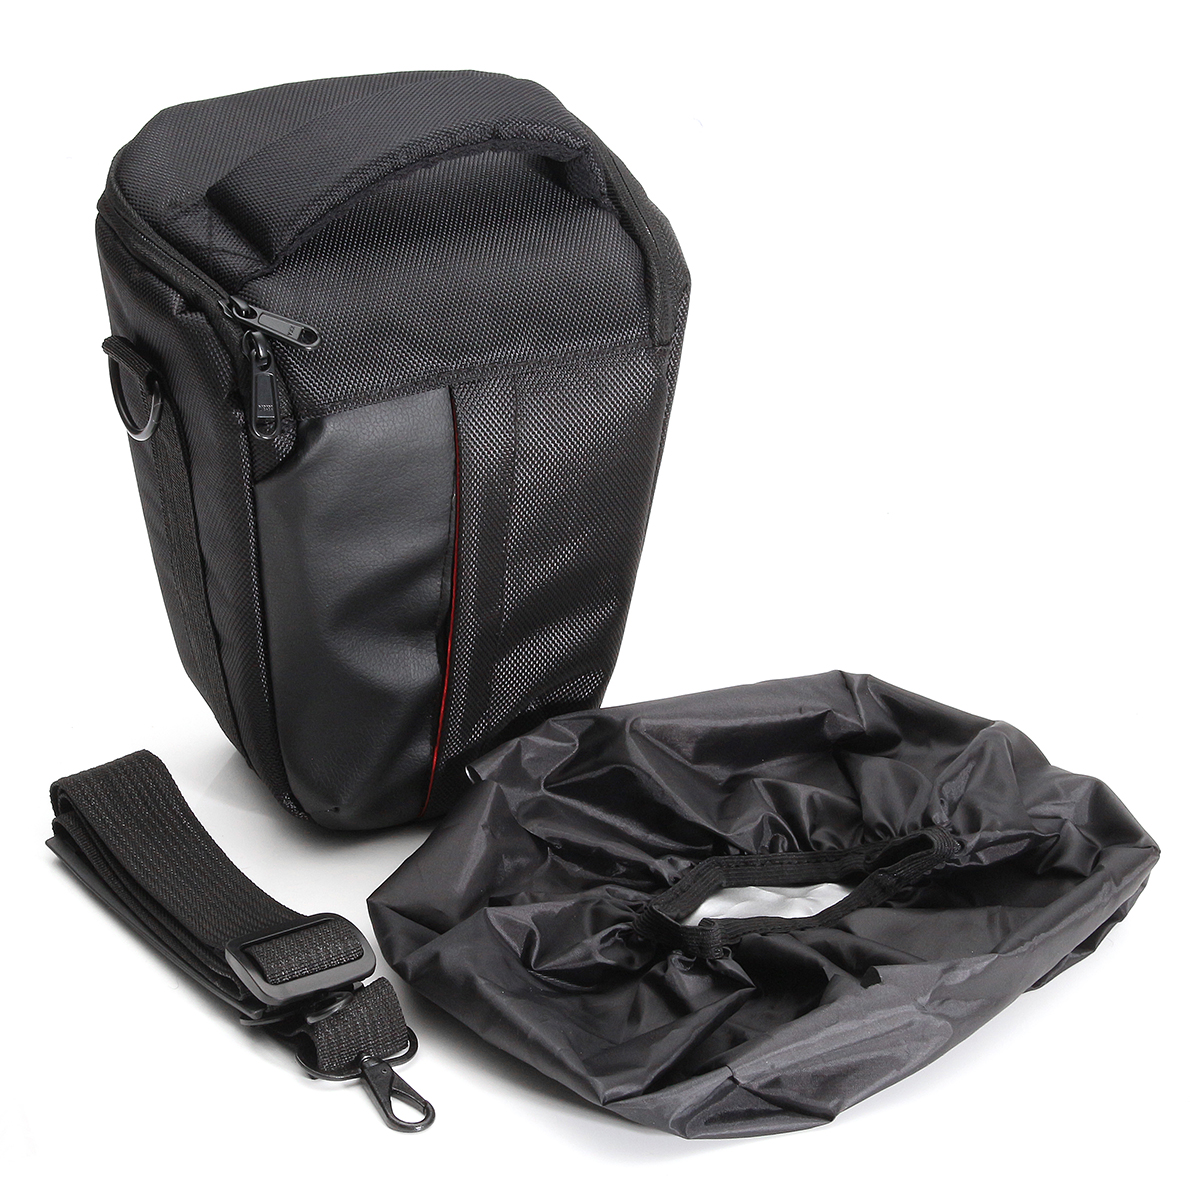 Waterproof Camera Shoulder Bag Case for Nikon D3200 D5200 D810 D750 D800E...